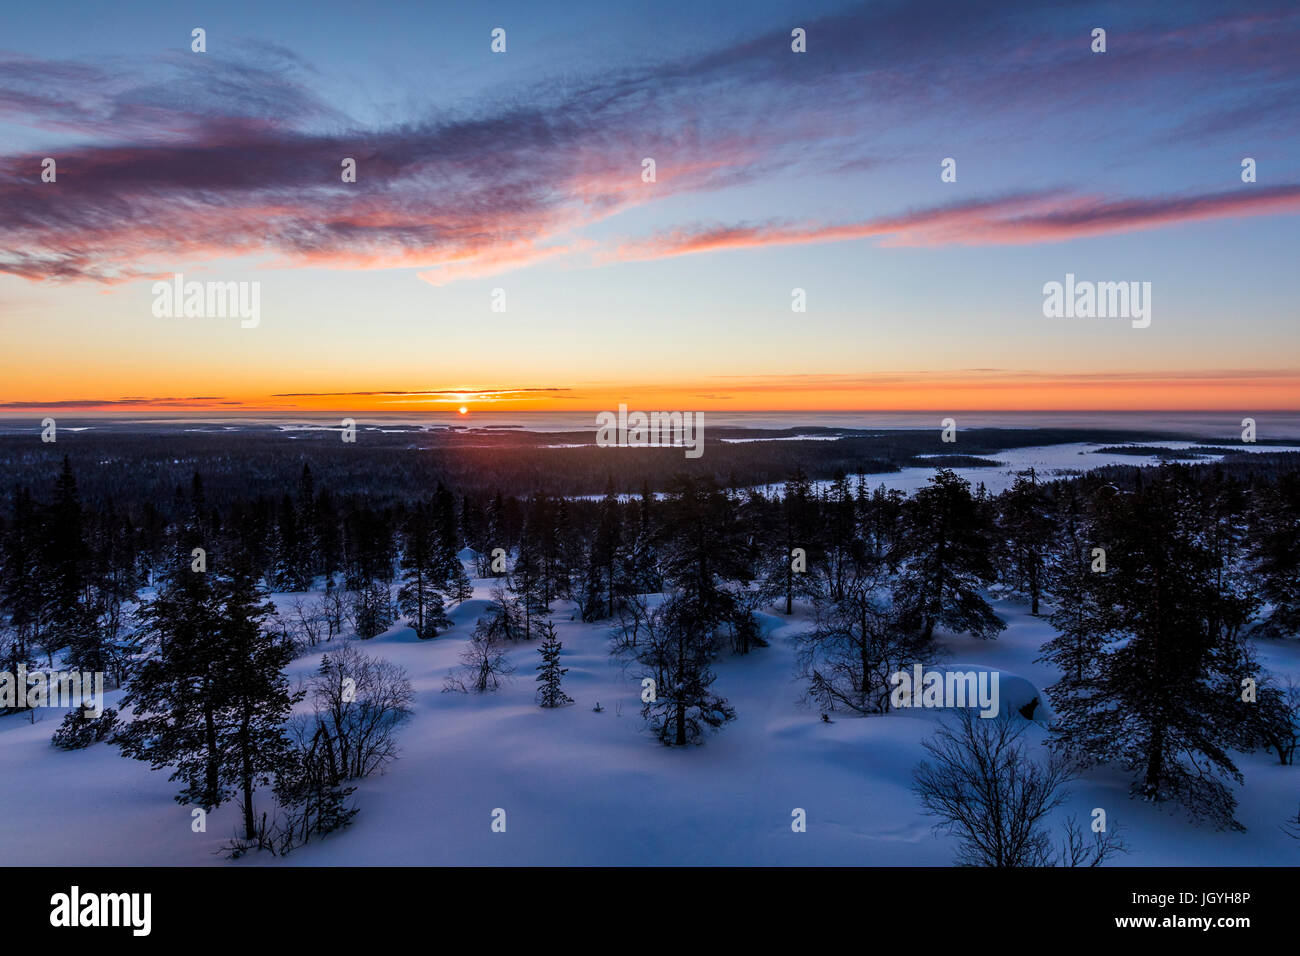 Winter sunrise in Finland Stock Photo